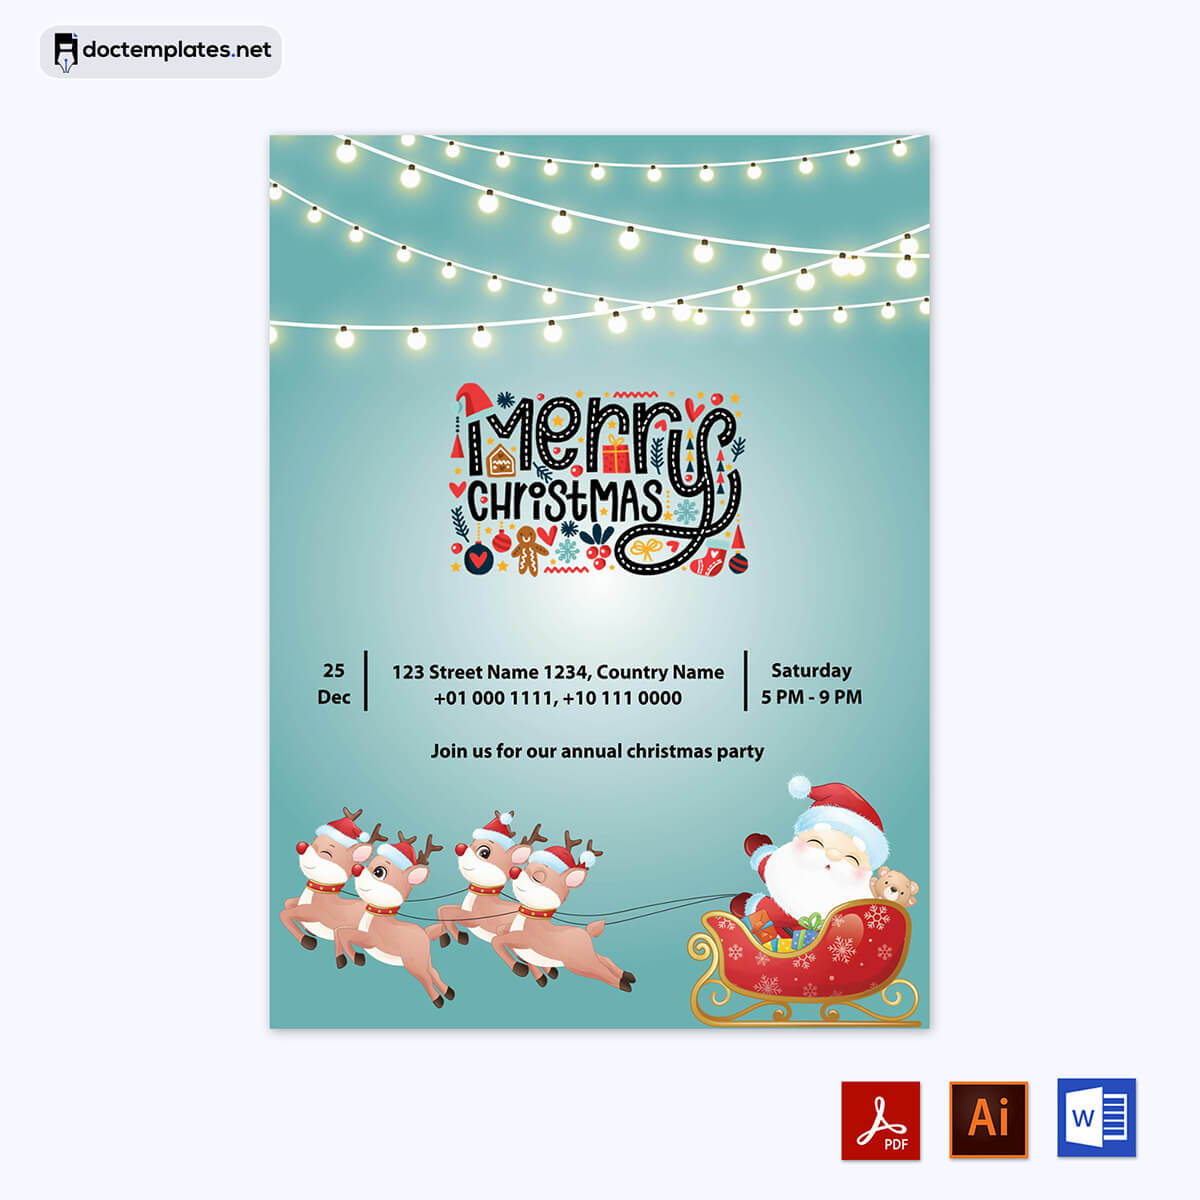 Image of christmas card (free)
christmas card (free)
